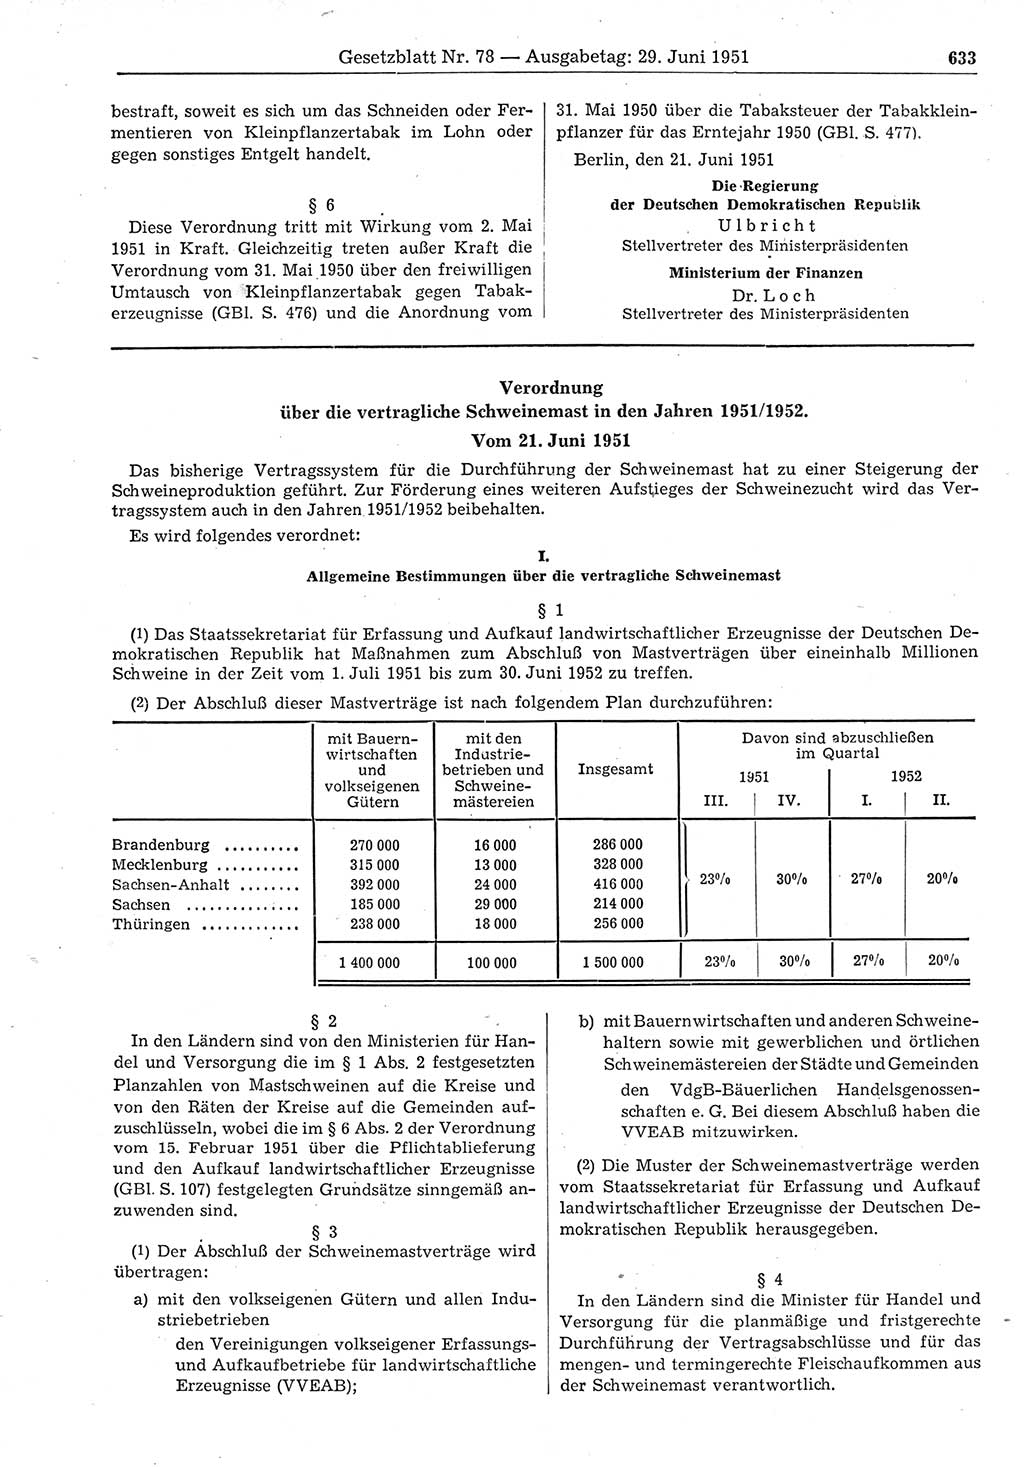 Gesetzblatt (GBl.) der Deutschen Demokratischen Republik (DDR) 1951, Seite 633 (GBl. DDR 1951, S. 633)